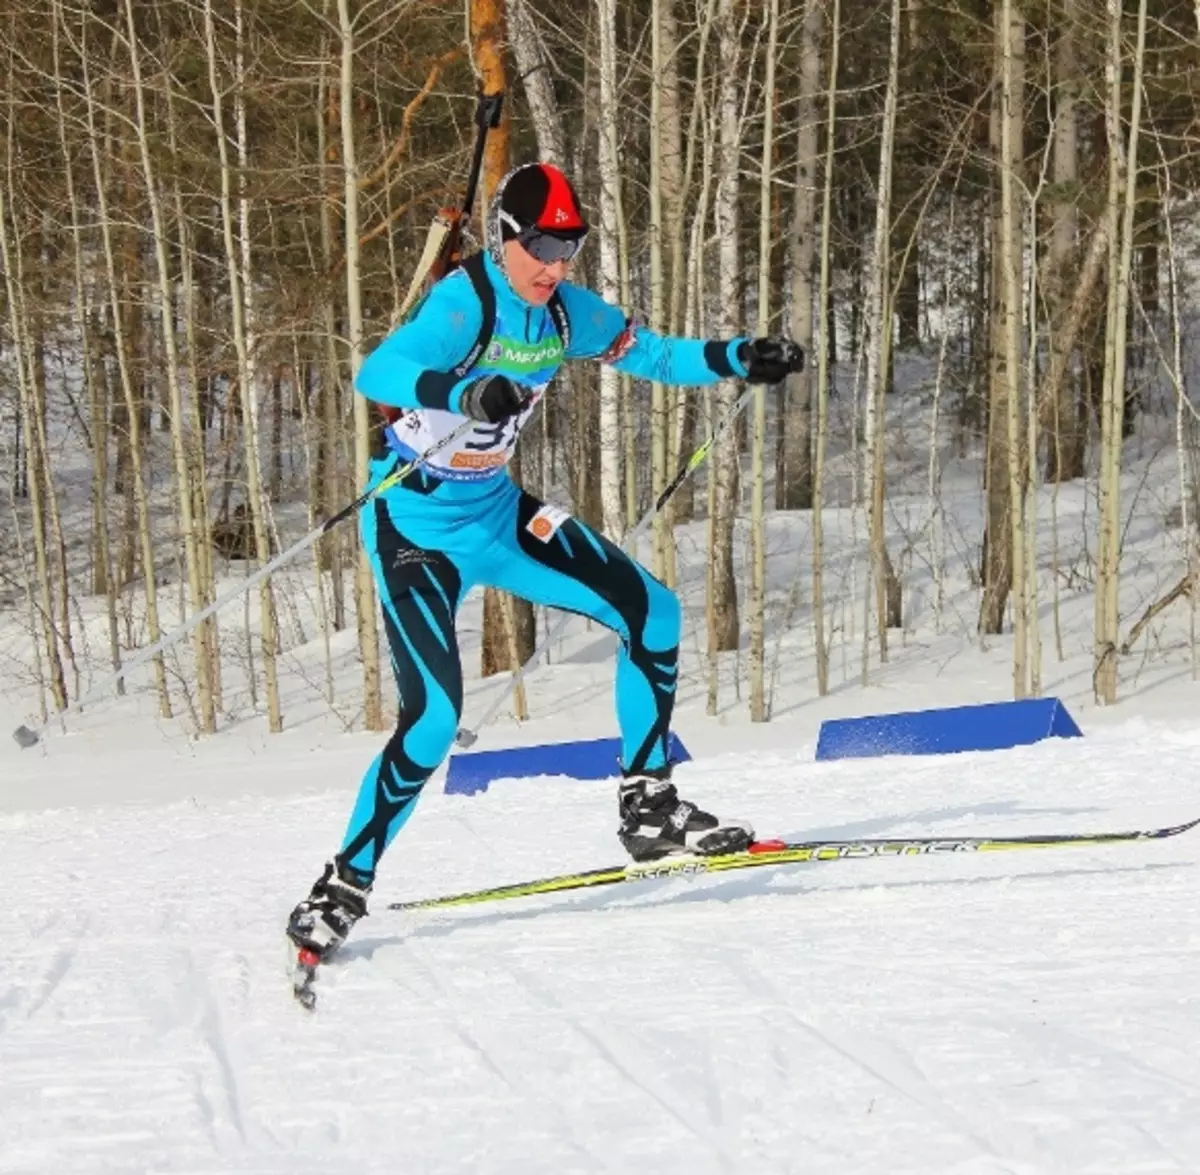 لباس های اسکی مسابقه: شانه های زنانه و مردانه برای اسکی روی زمین، جداگانه و دیگر مدل های اسکی 20263_9